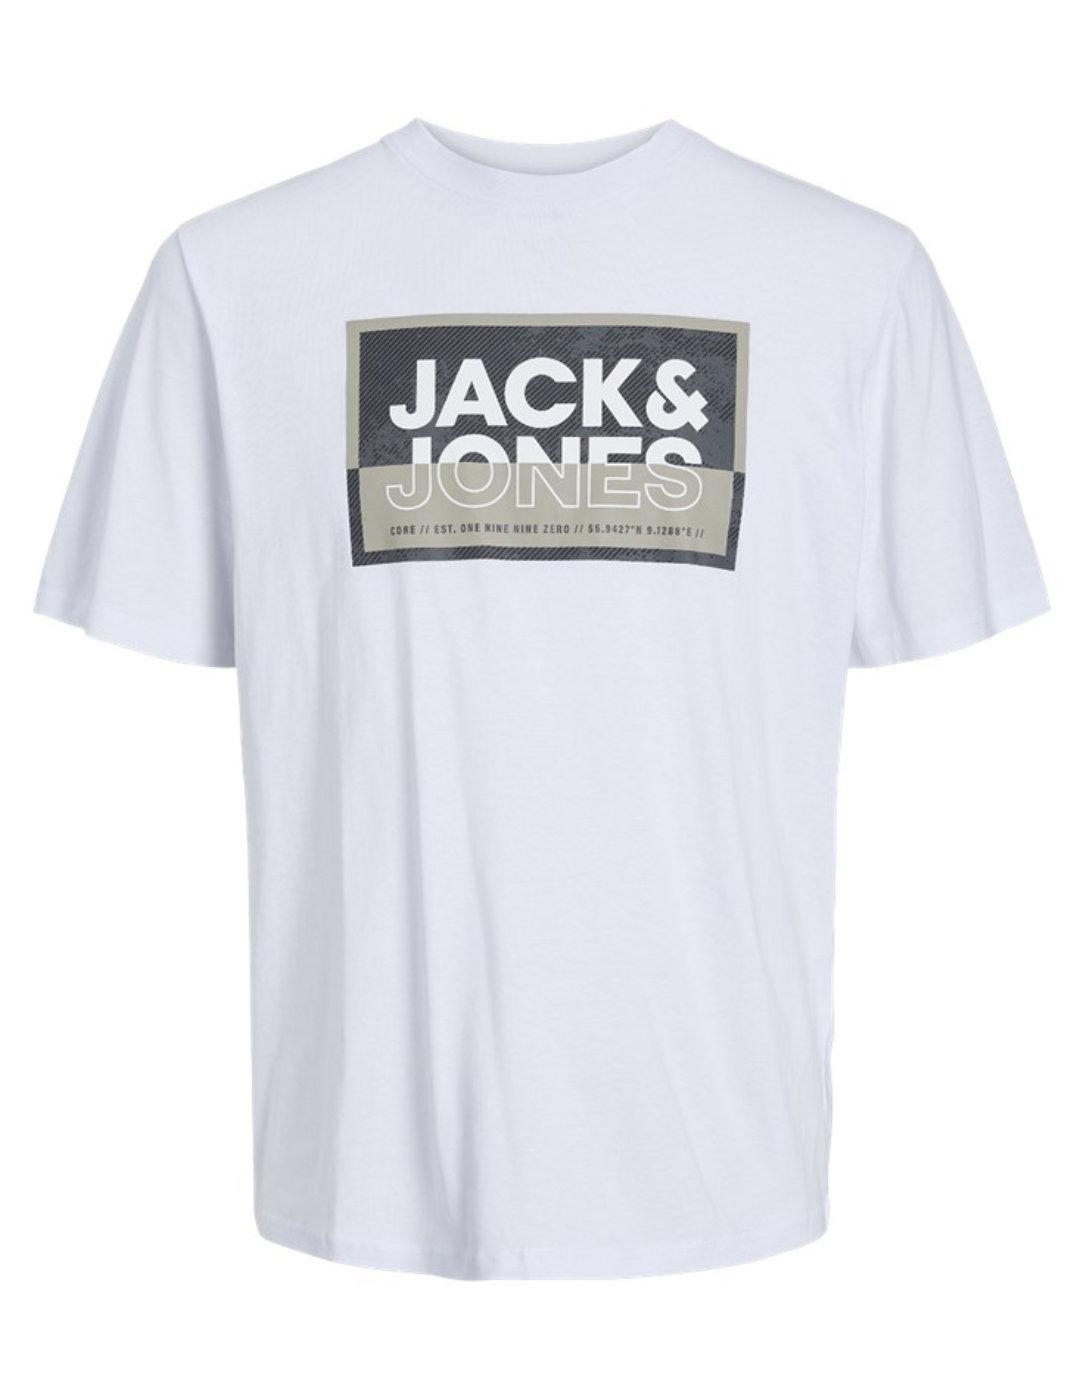 Camiseta Jack&Jones Junior Logan blanco manga corta de niño